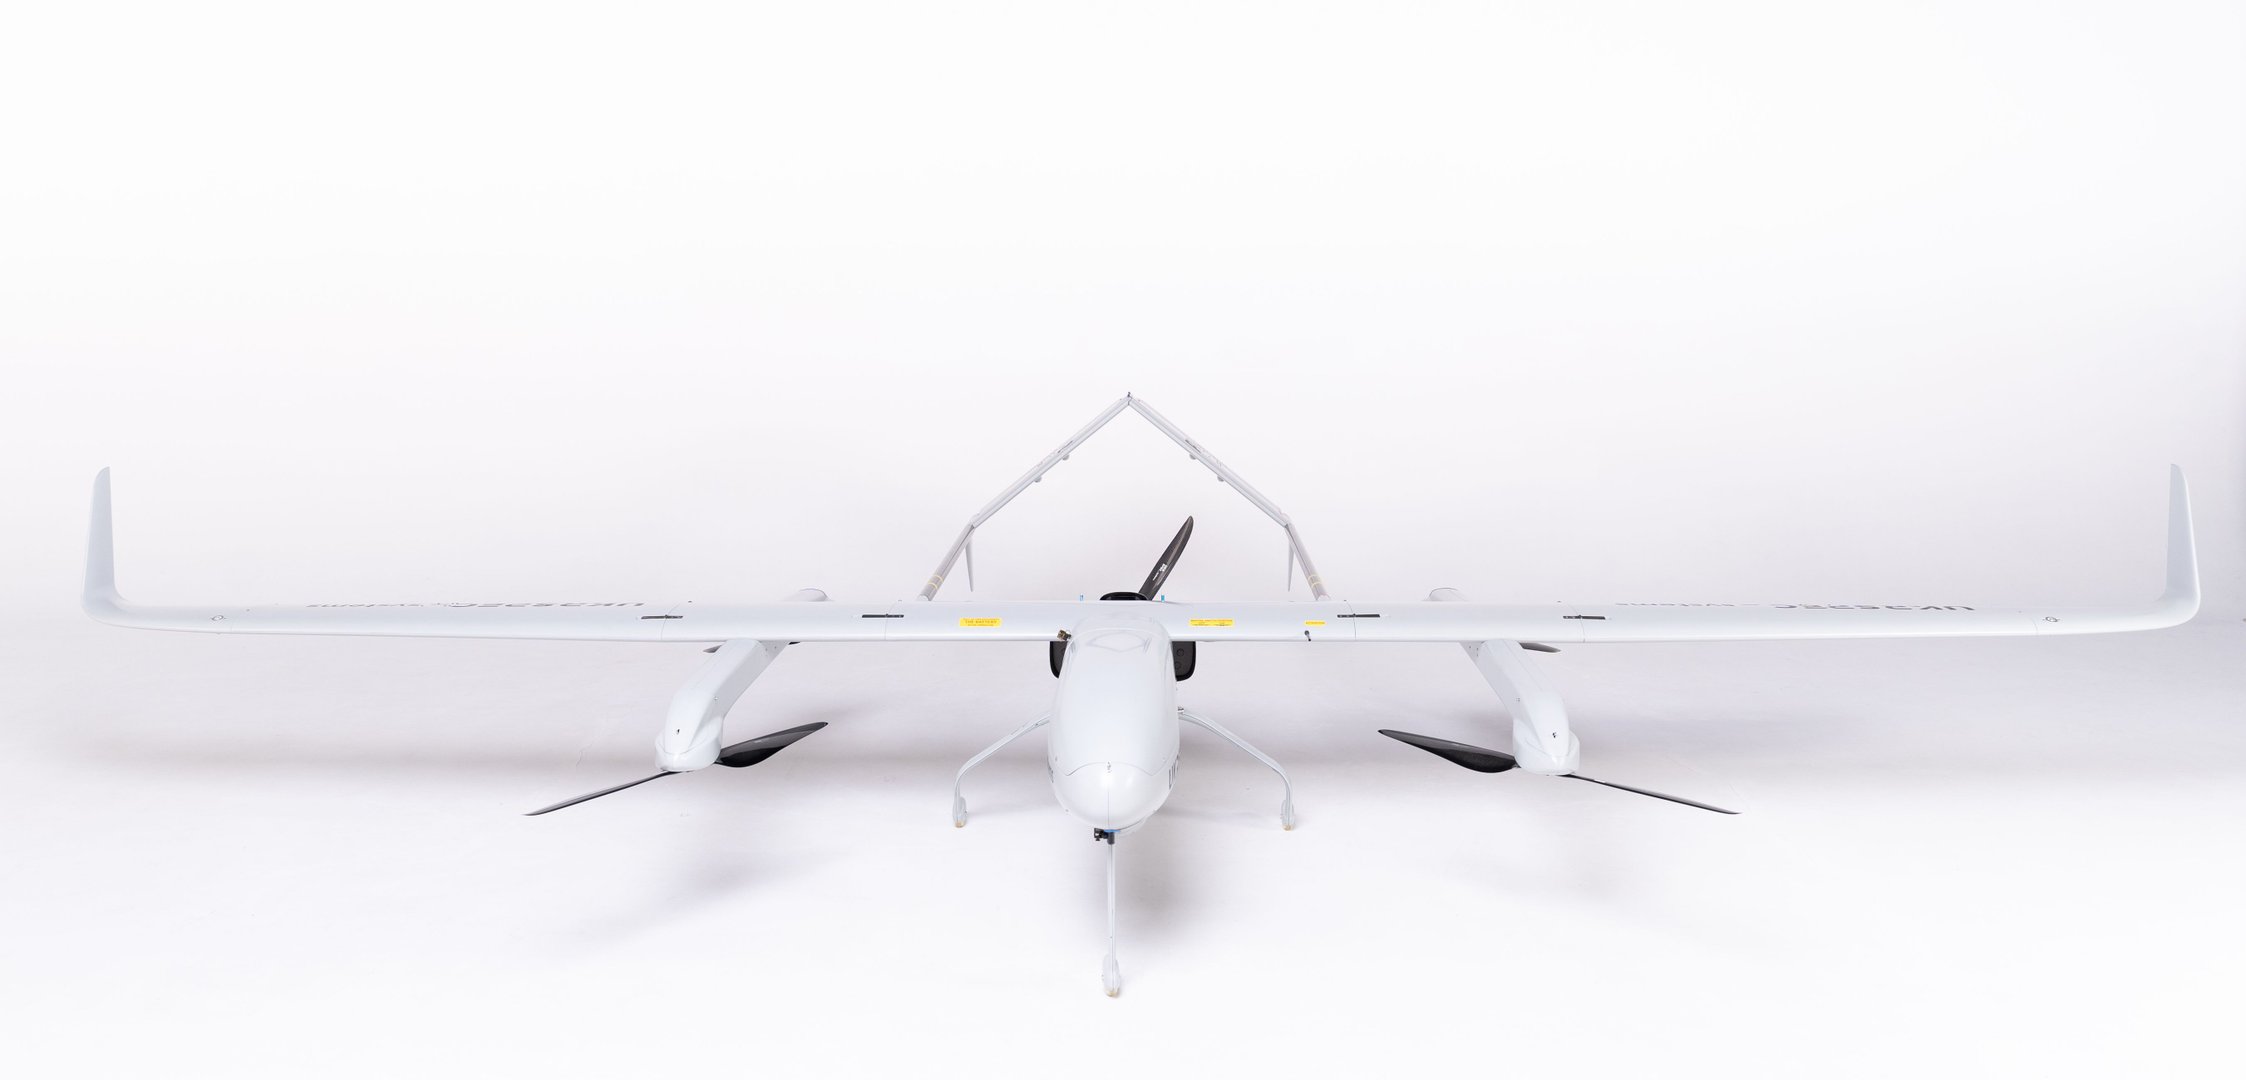 L'AFU recevra bientôt le premier drone PD-2 pour assister les HIMARS et les MLRS M270 - 20 drones achetés pour un total de 8 500 000 $.